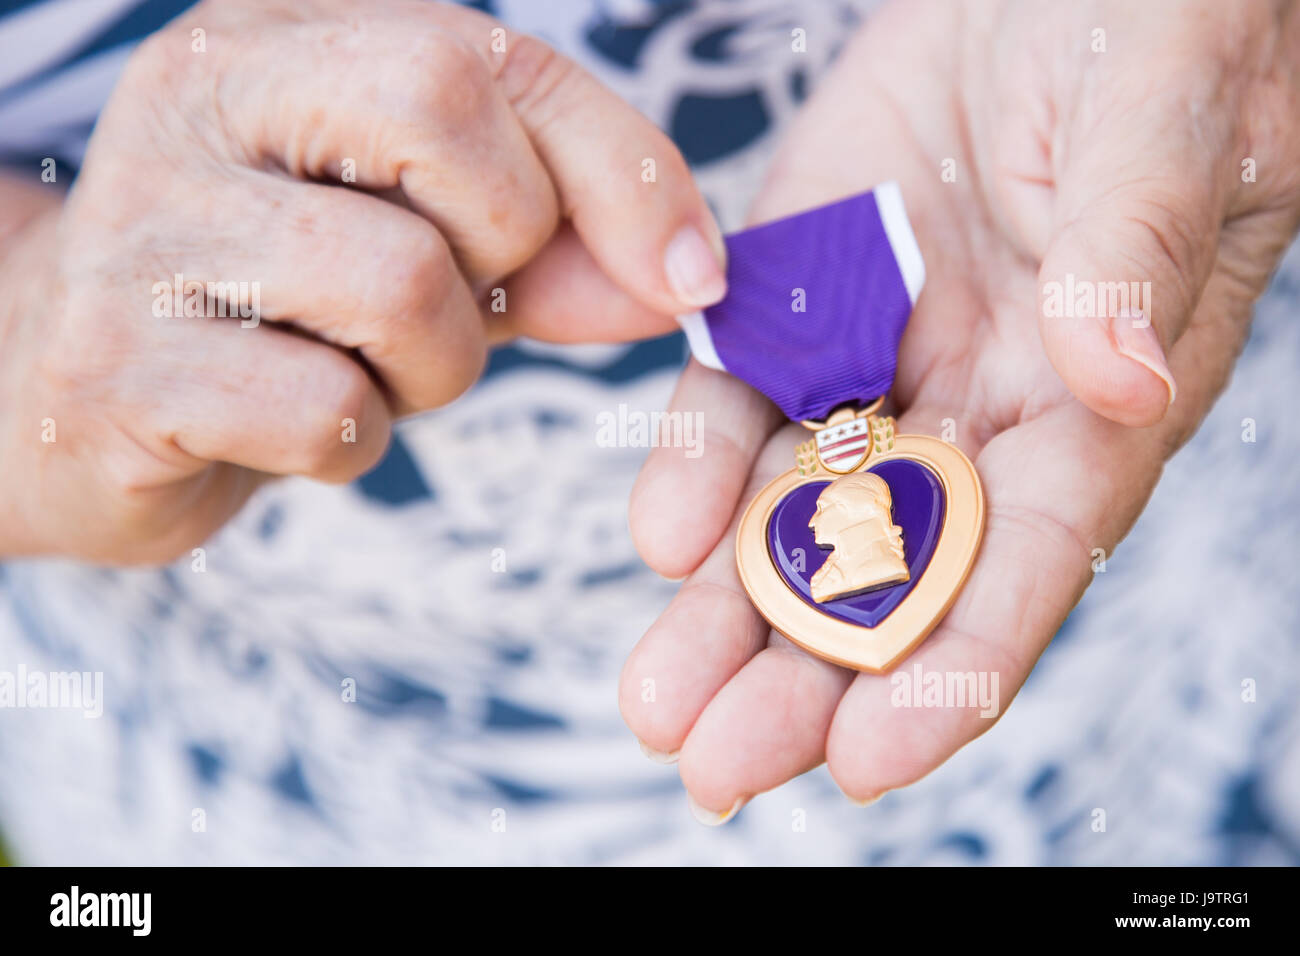 Senior Mujer sosteniendo la Medalla del Corazón Púrpura militar en sus manos. Foto de stock